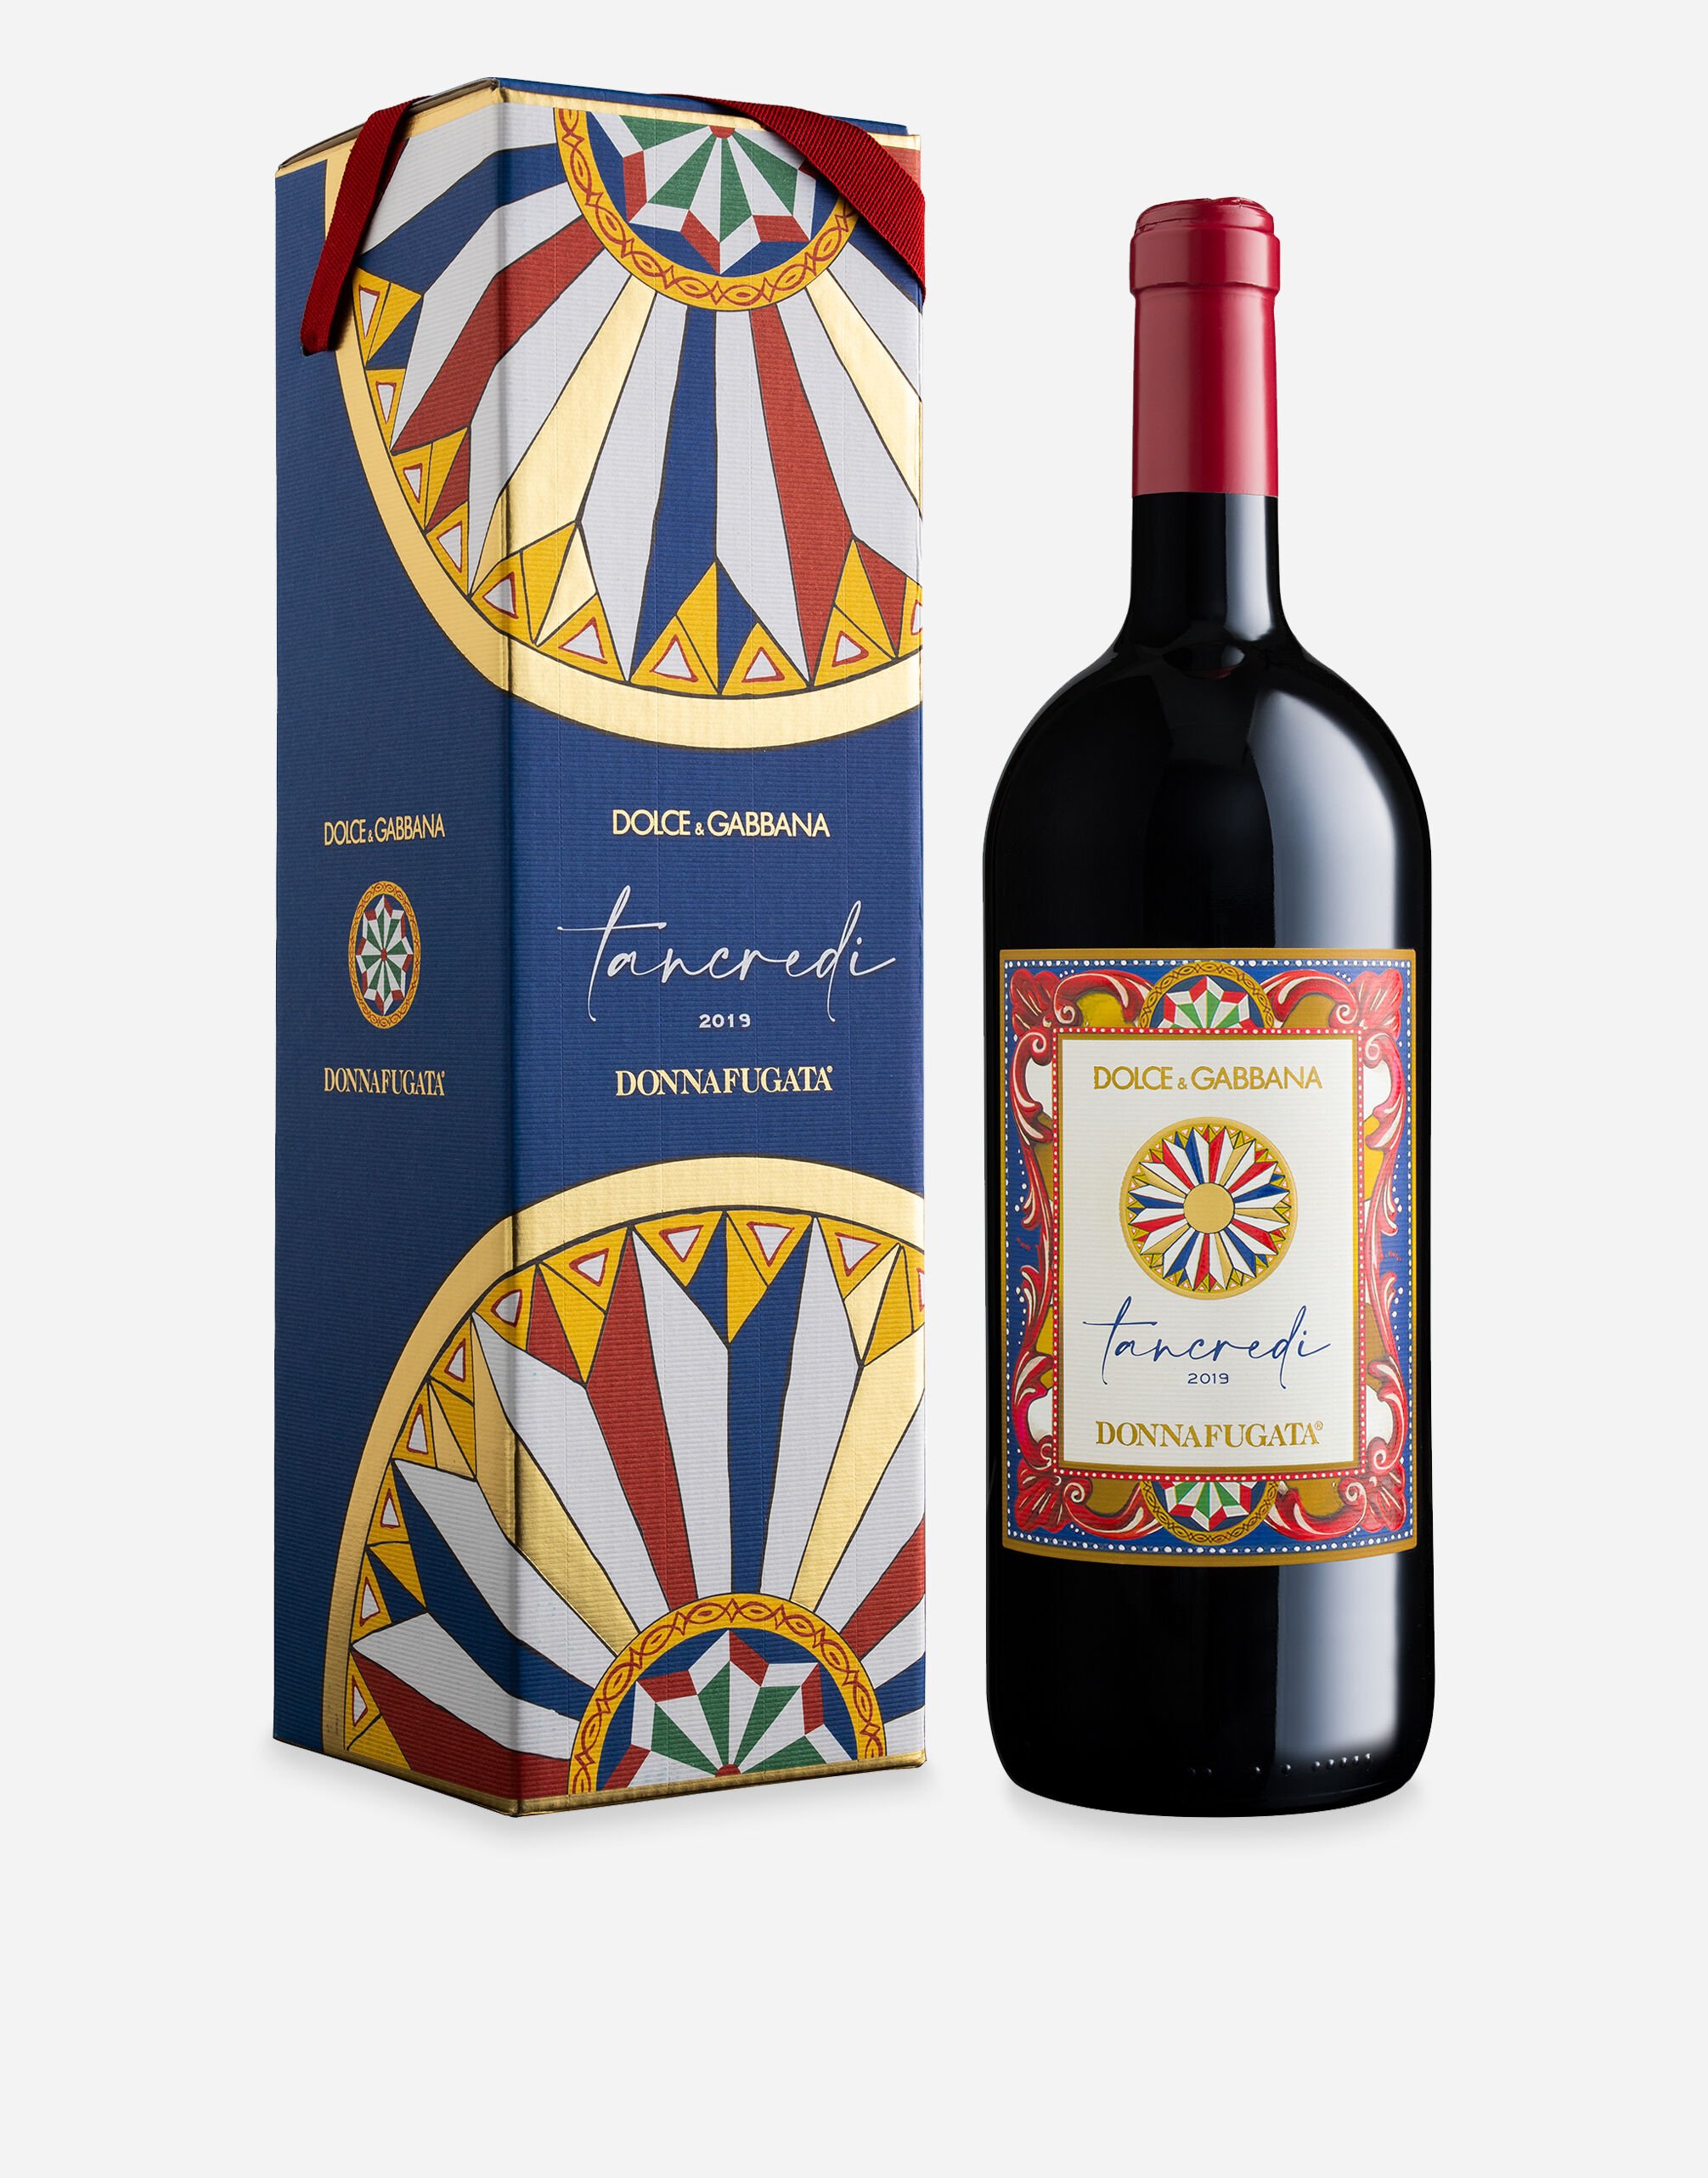 Dolce & Gabbana TANCREDI 2019 - Terre Siciliane IGT Rosso (Magnum 1.5L) Single box Multicolor PW1003RES17